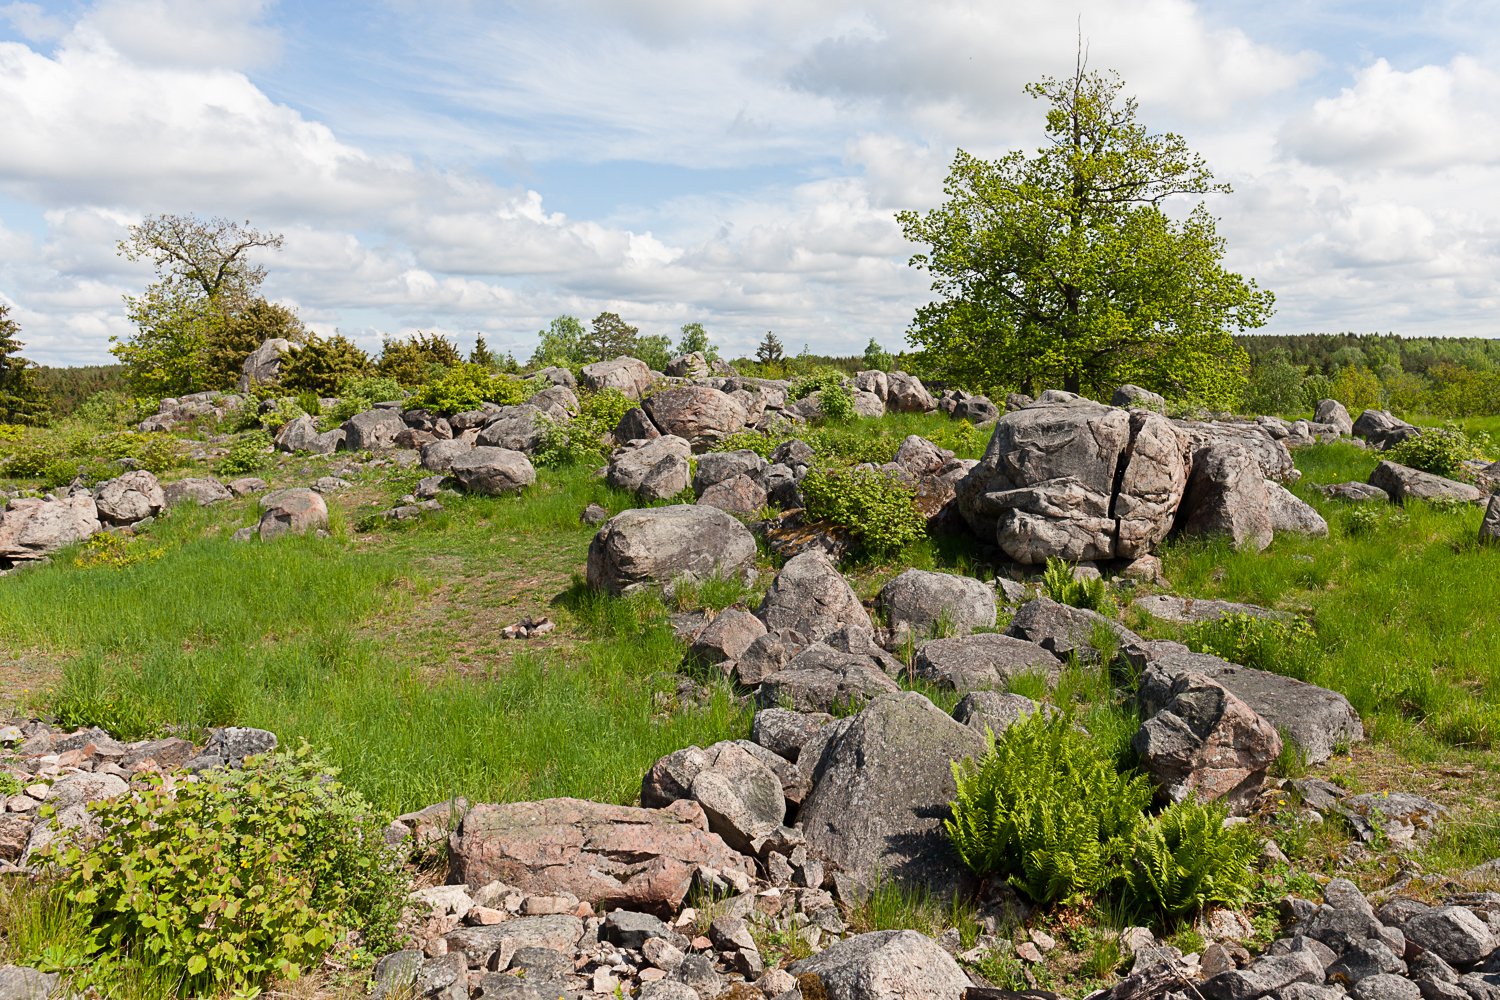 På ojämn gräsmark finns flera högar av sten och stora stenar utspridda. I bakgrunden växer flera träd. 